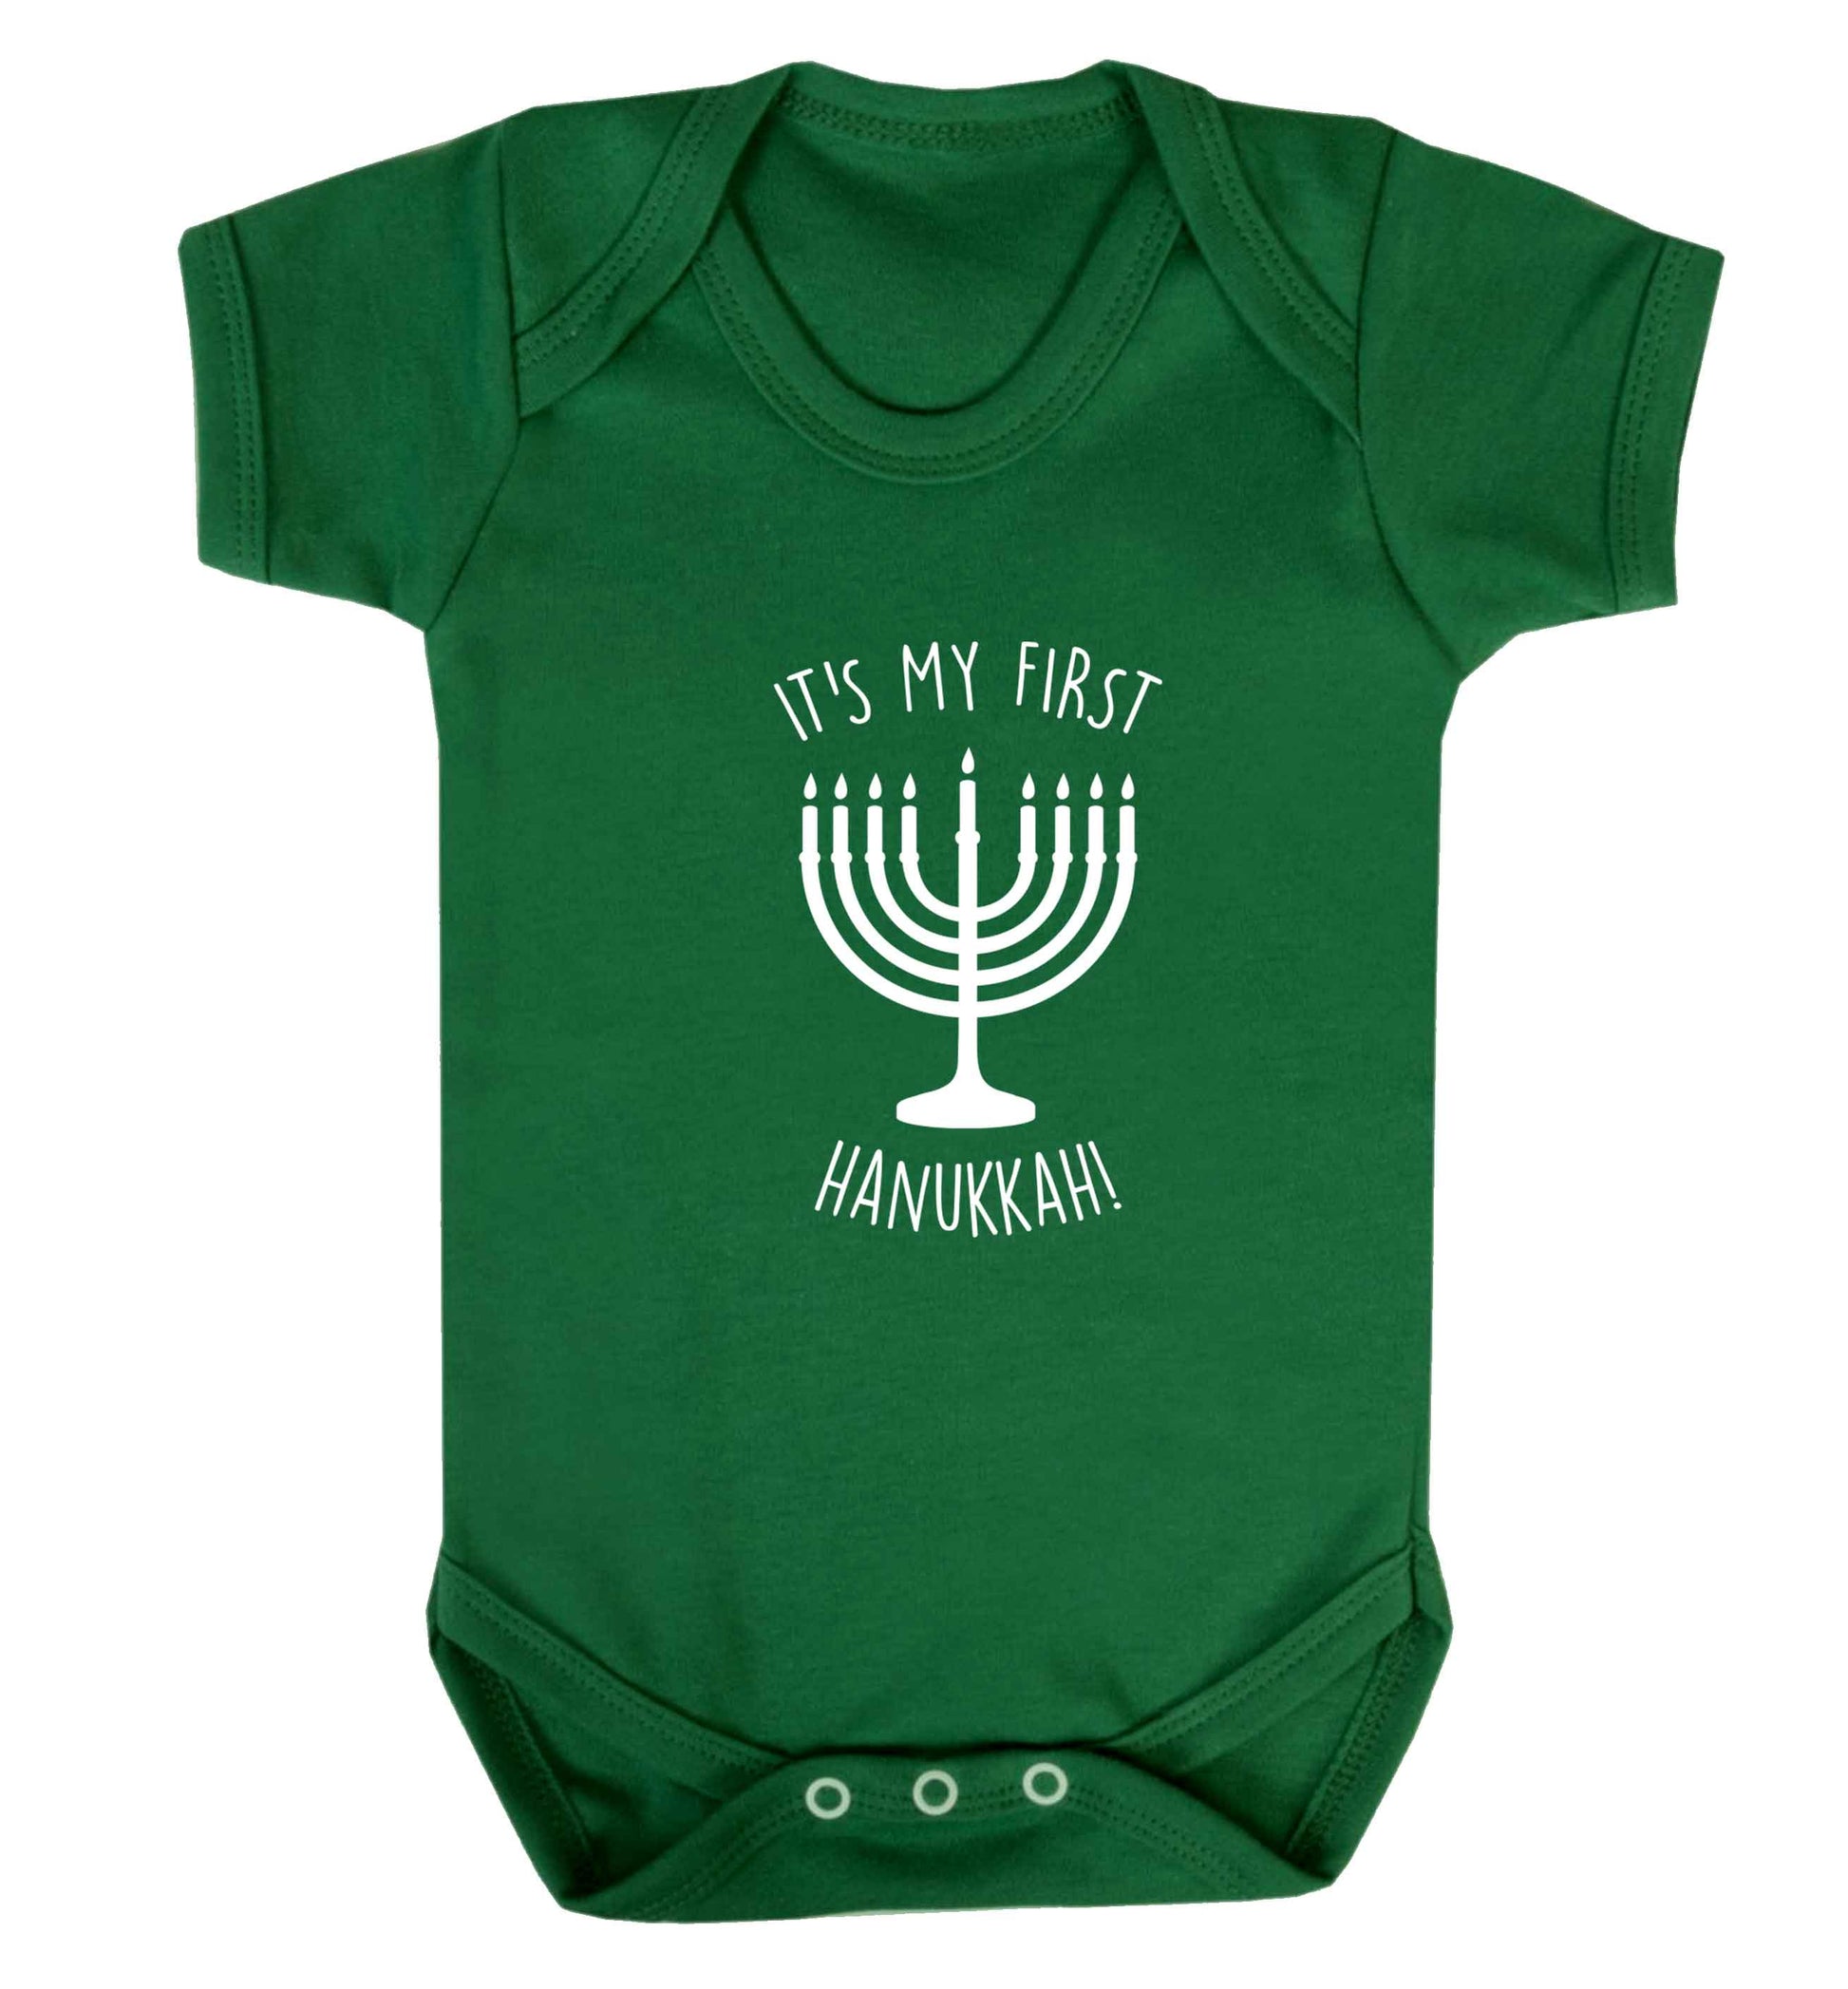 It's my first hanukkah baby vest green 18-24 months